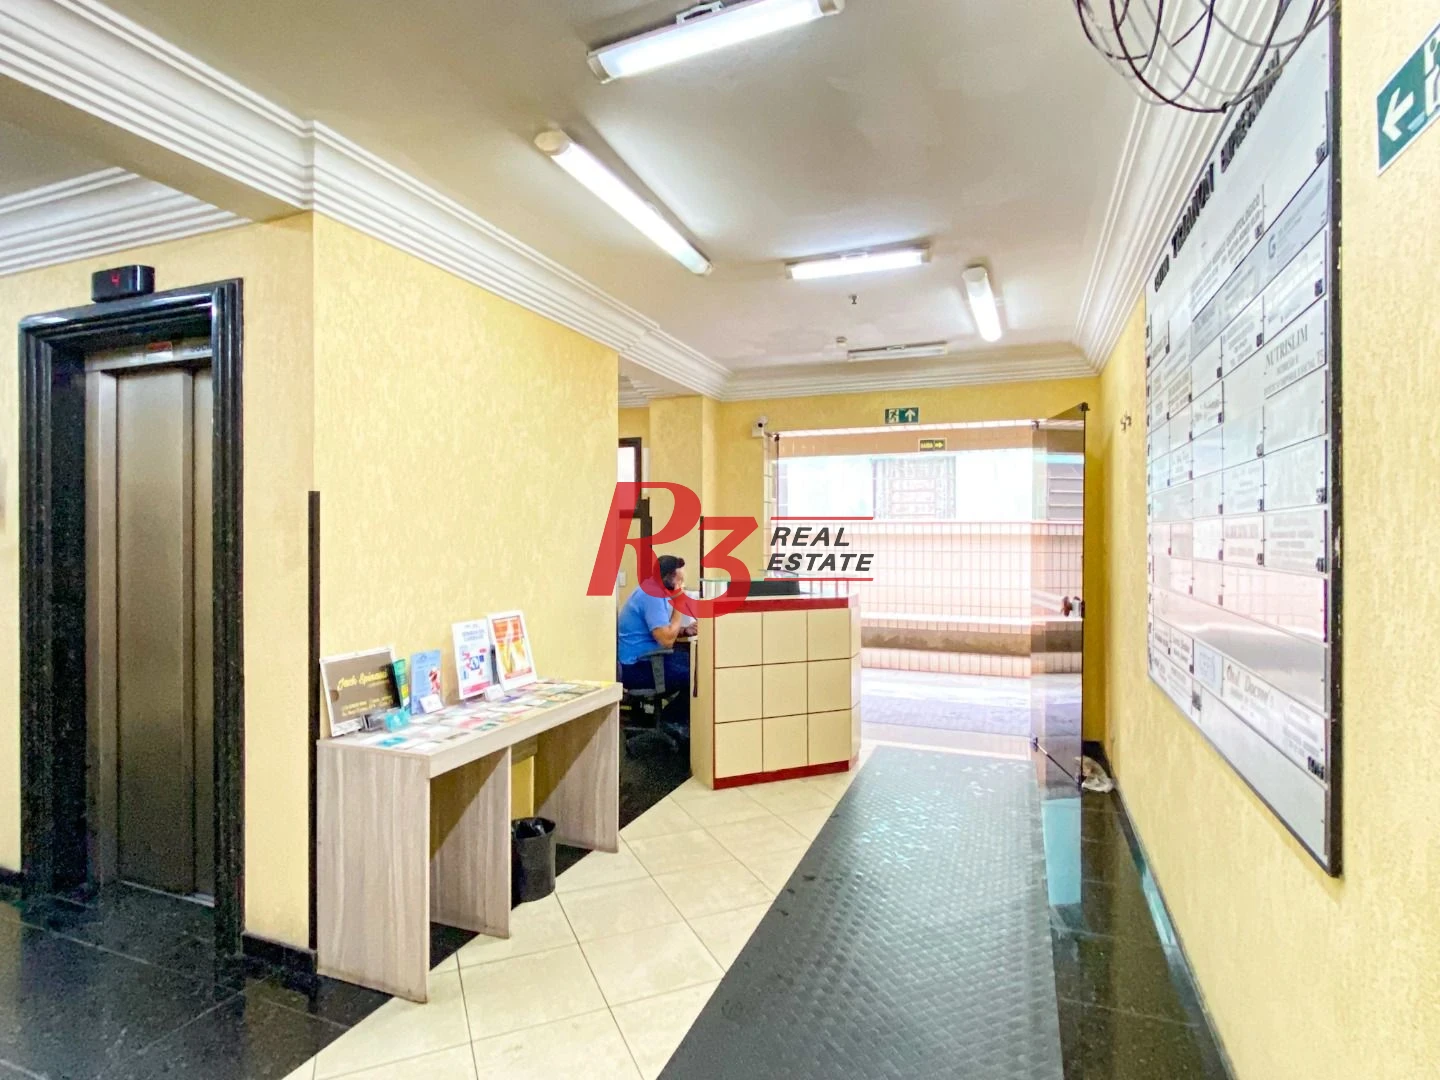 Sala para alugar, 44 m² por R$ 2.800,02/mês - Gonzaga - Santos/SP